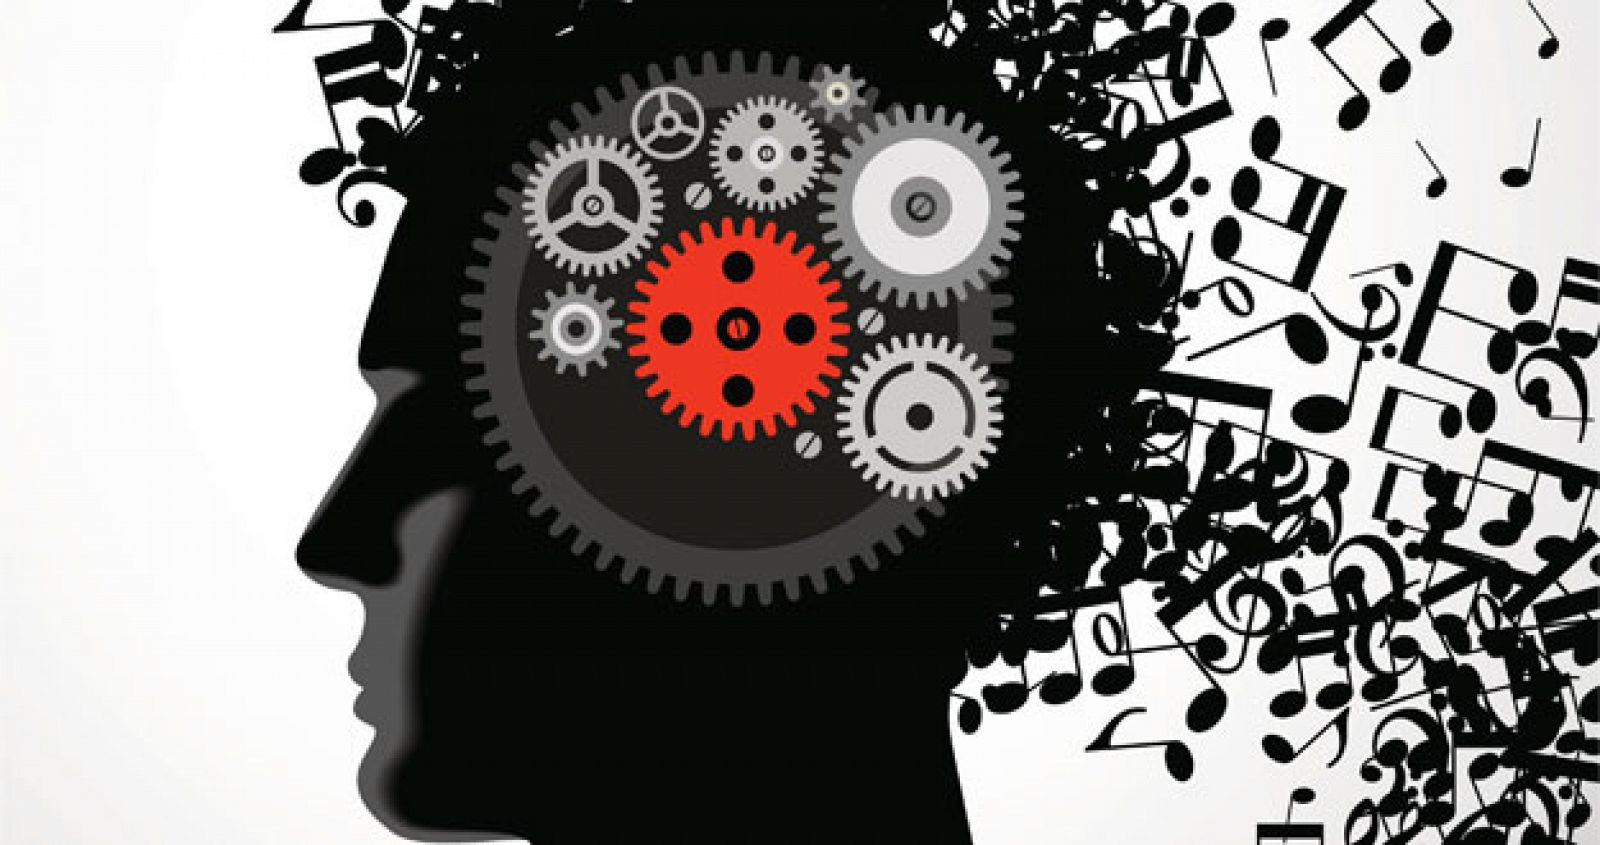 Al escuchar música tu cerebro está a tope de dopamina. Y mientras la escuchas tu cerebro hace predicciones constantes sobre cuál es la siguiente nota.